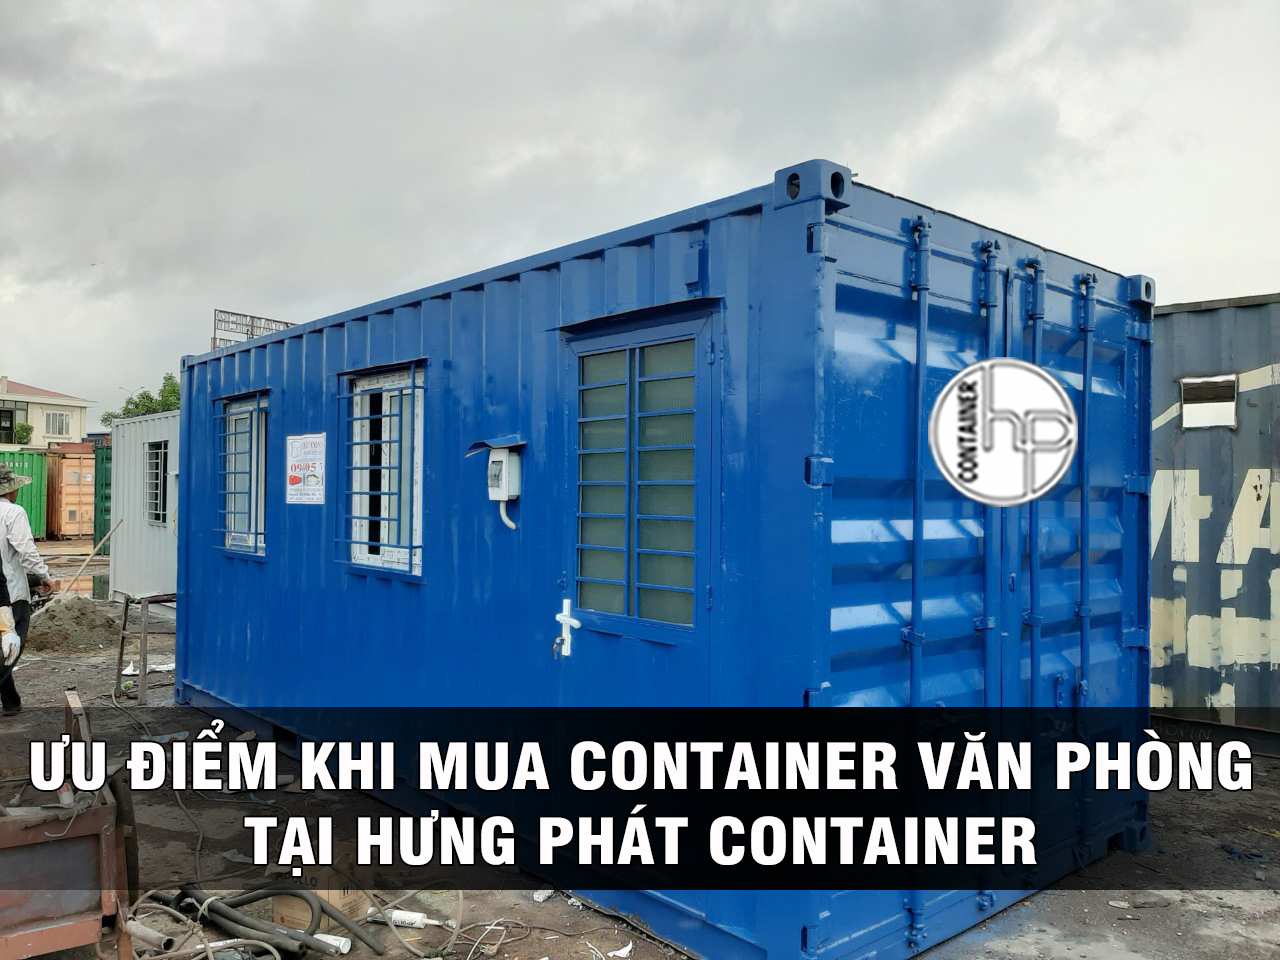 Ưu điểm khi mua van phong container của Hưng Phát